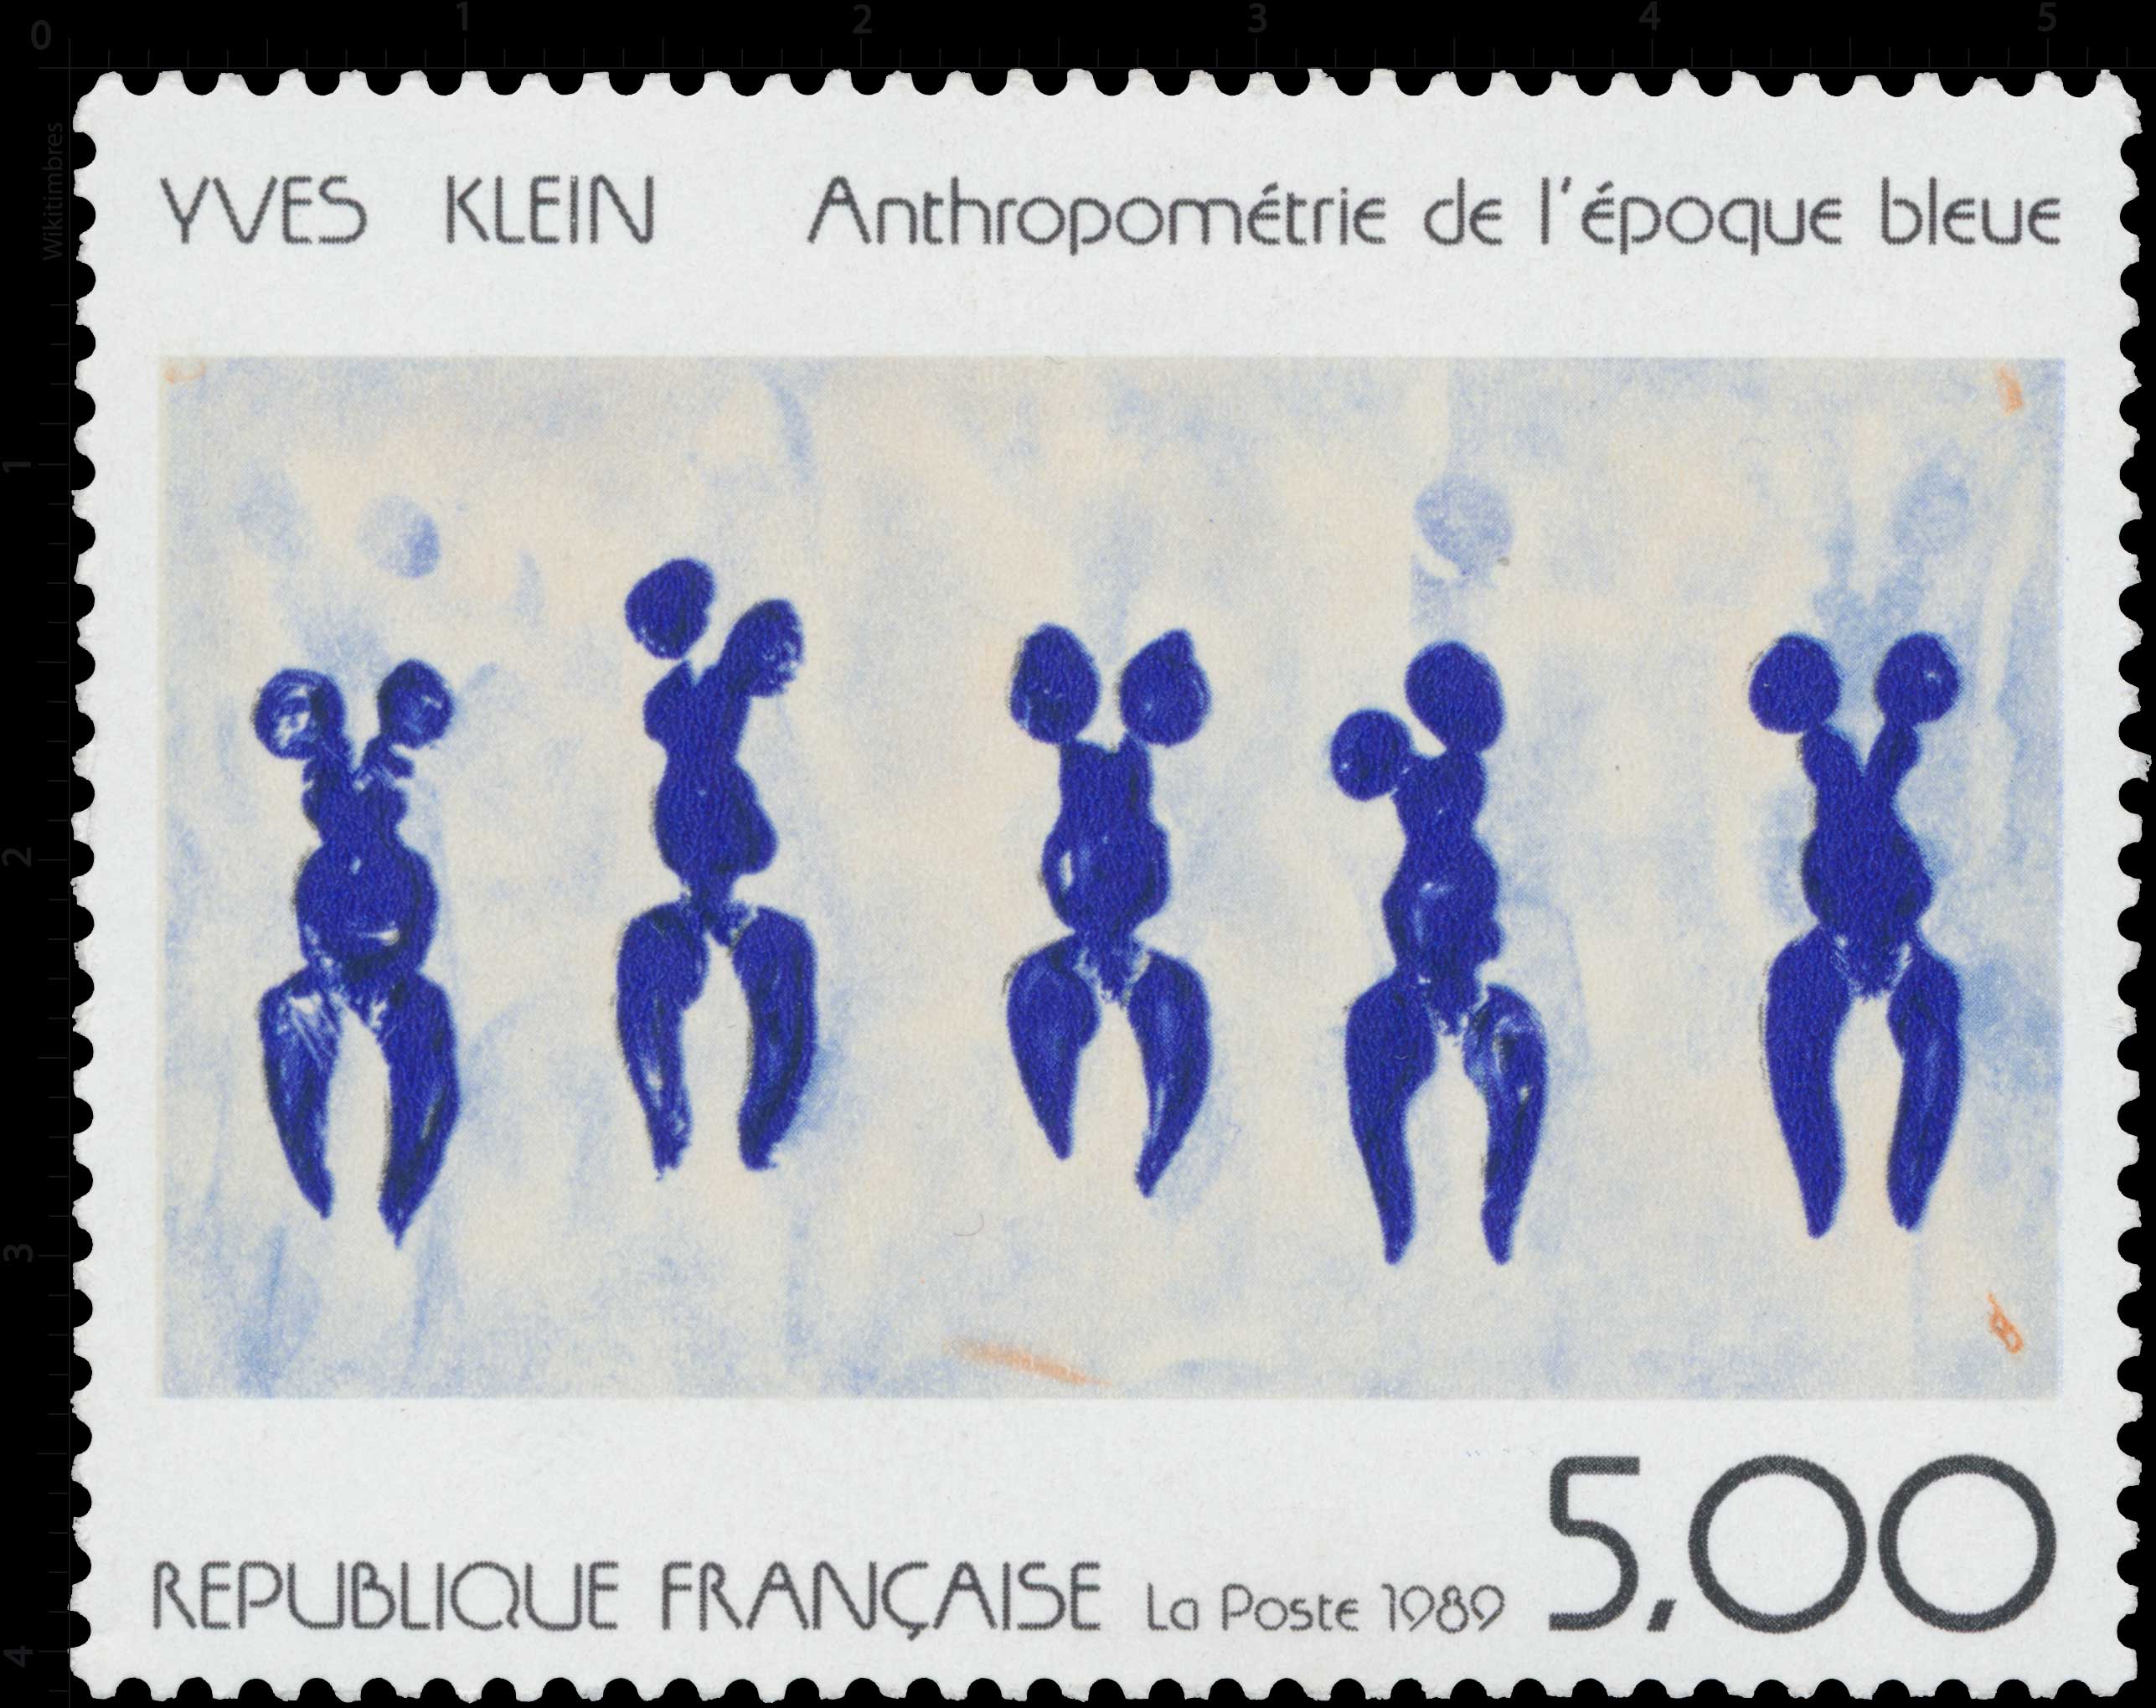 1989 YVES KLEIN Anthropométrie de l'époque bleue